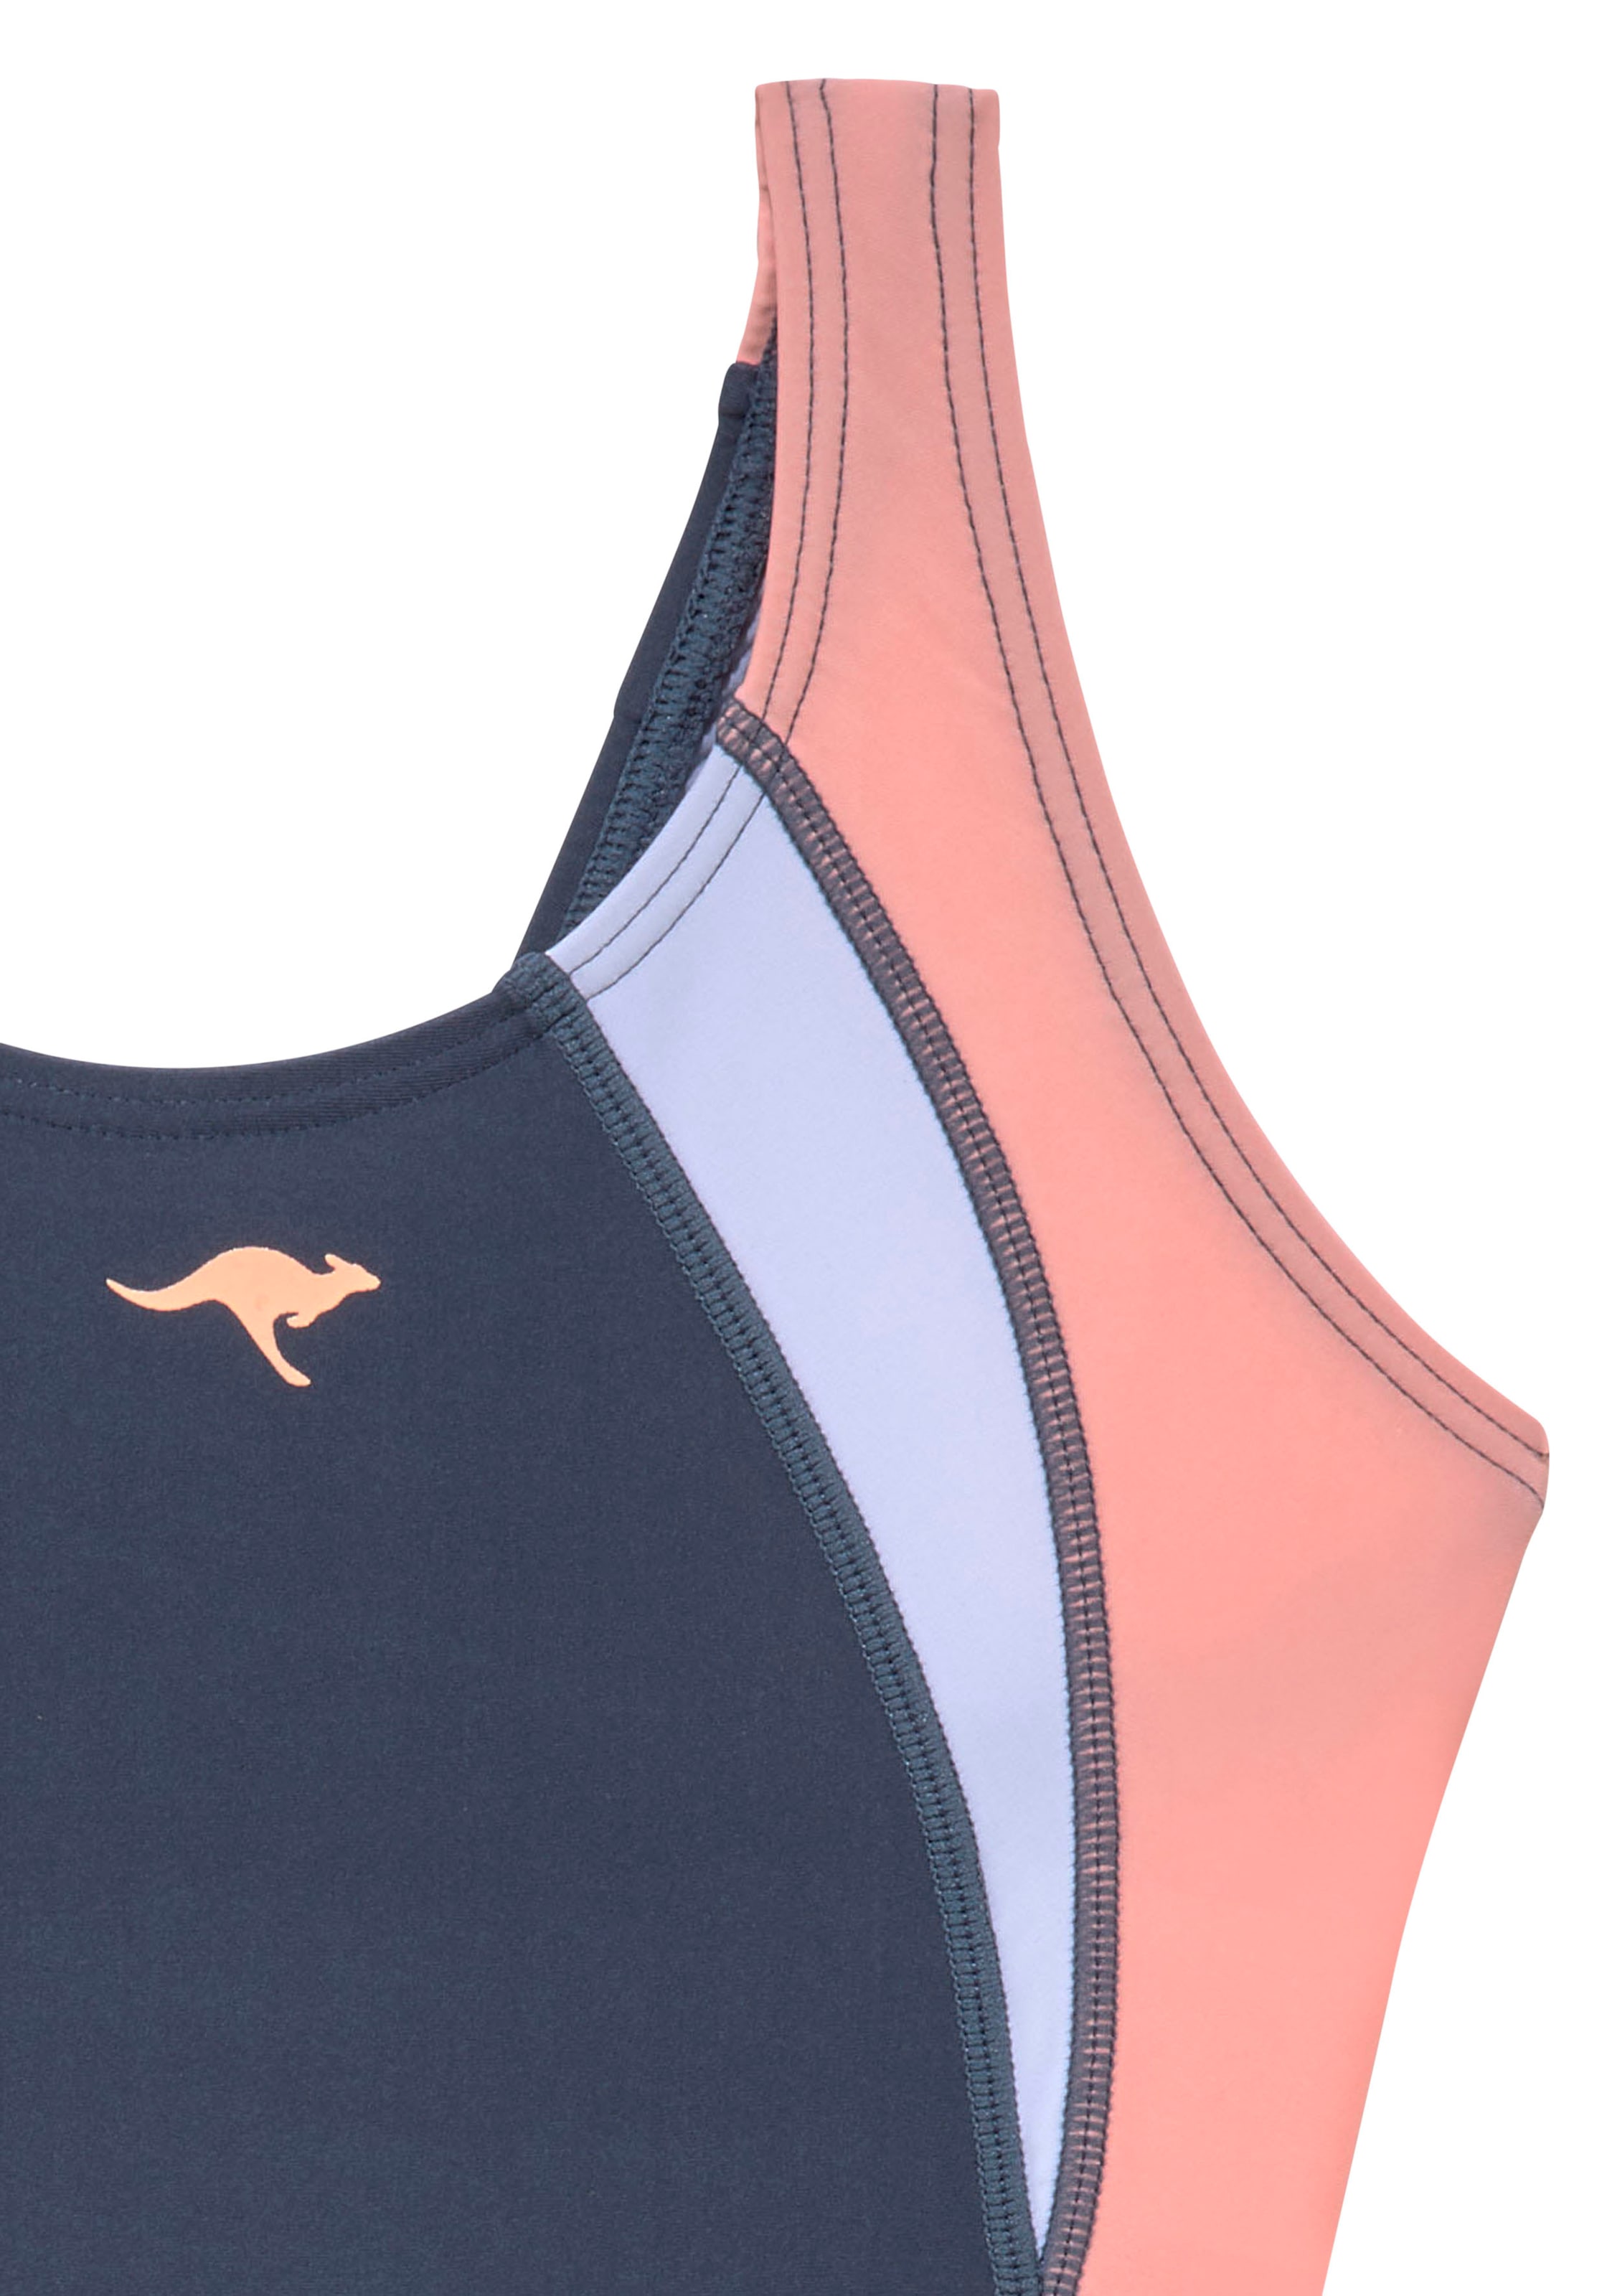 ✵ KangaROOS im Farbmix günstig | Jelmoli-Versand entdecken sportlichen Badeanzug